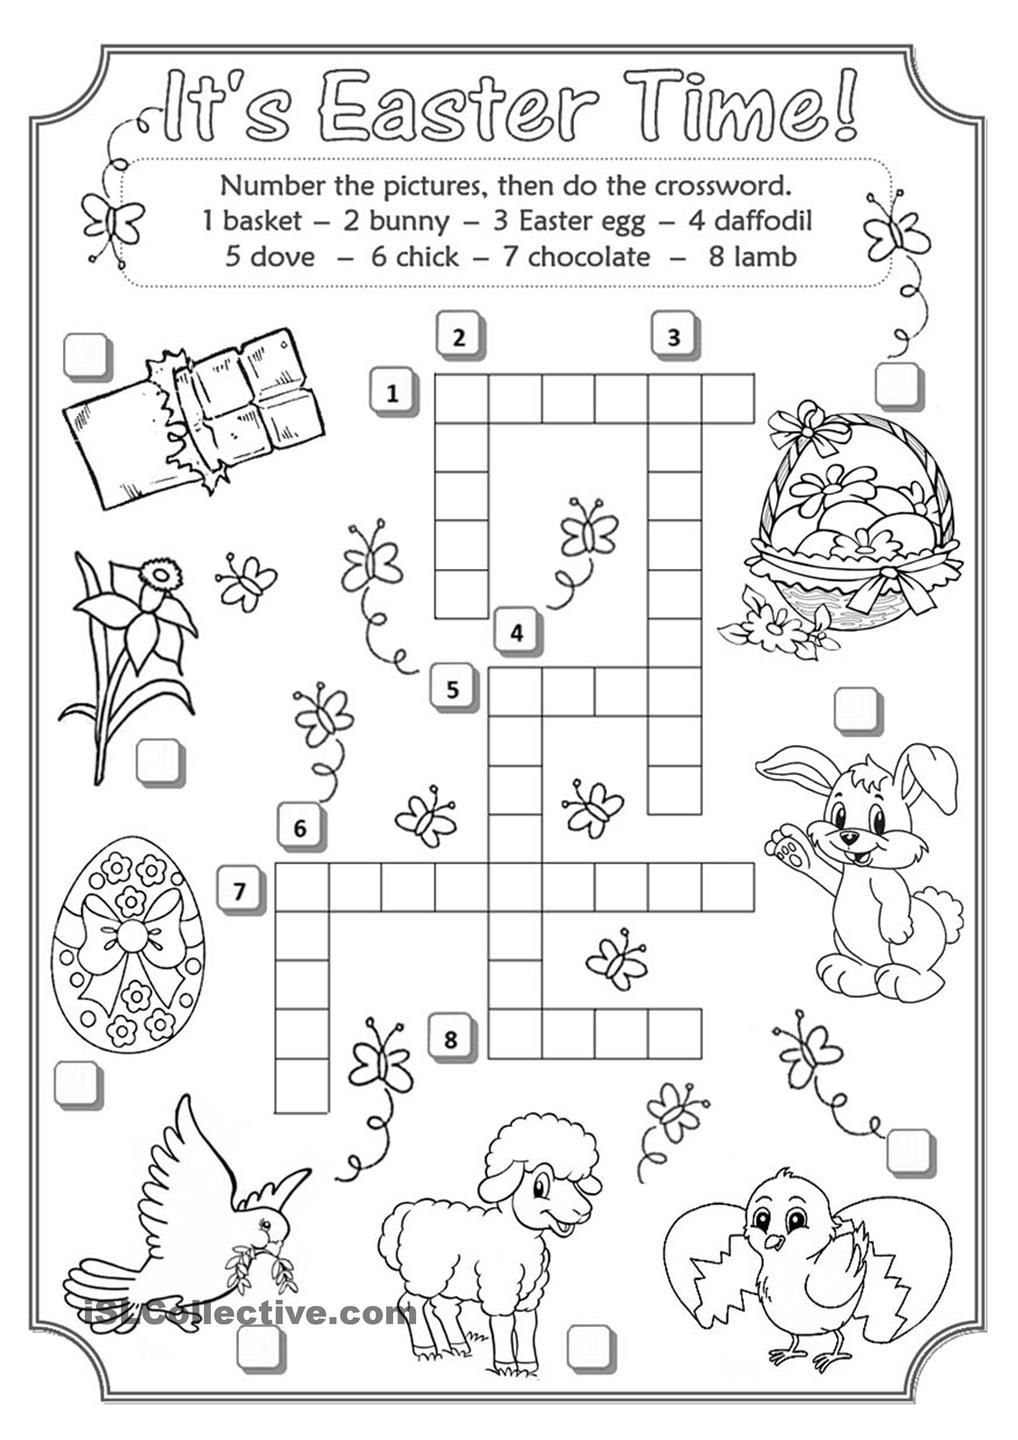 Easter Crossword | Teaching English | Easter Crossword, Easter - Easter Crossword Puzzle Printable Worksheets